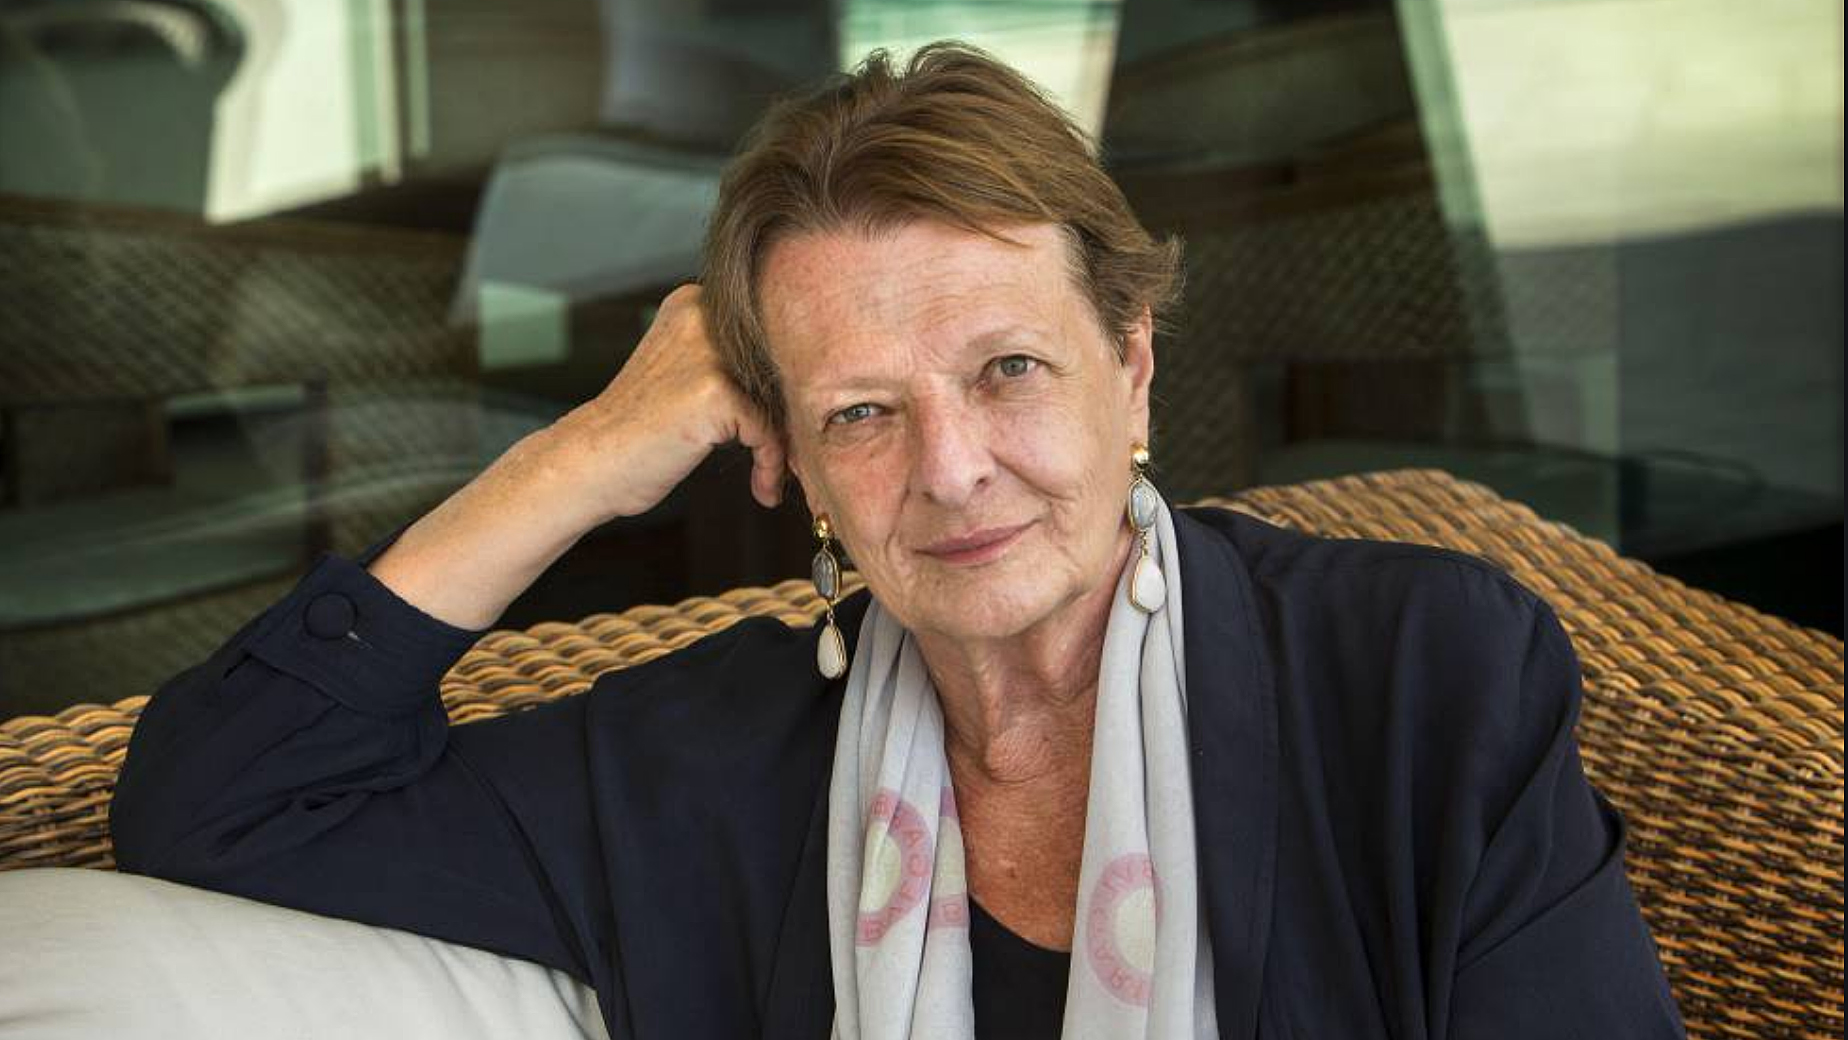 Les Arts lamenta el fallecimiento de Helga Schmidt, primera Intendente y directora artística del teatro